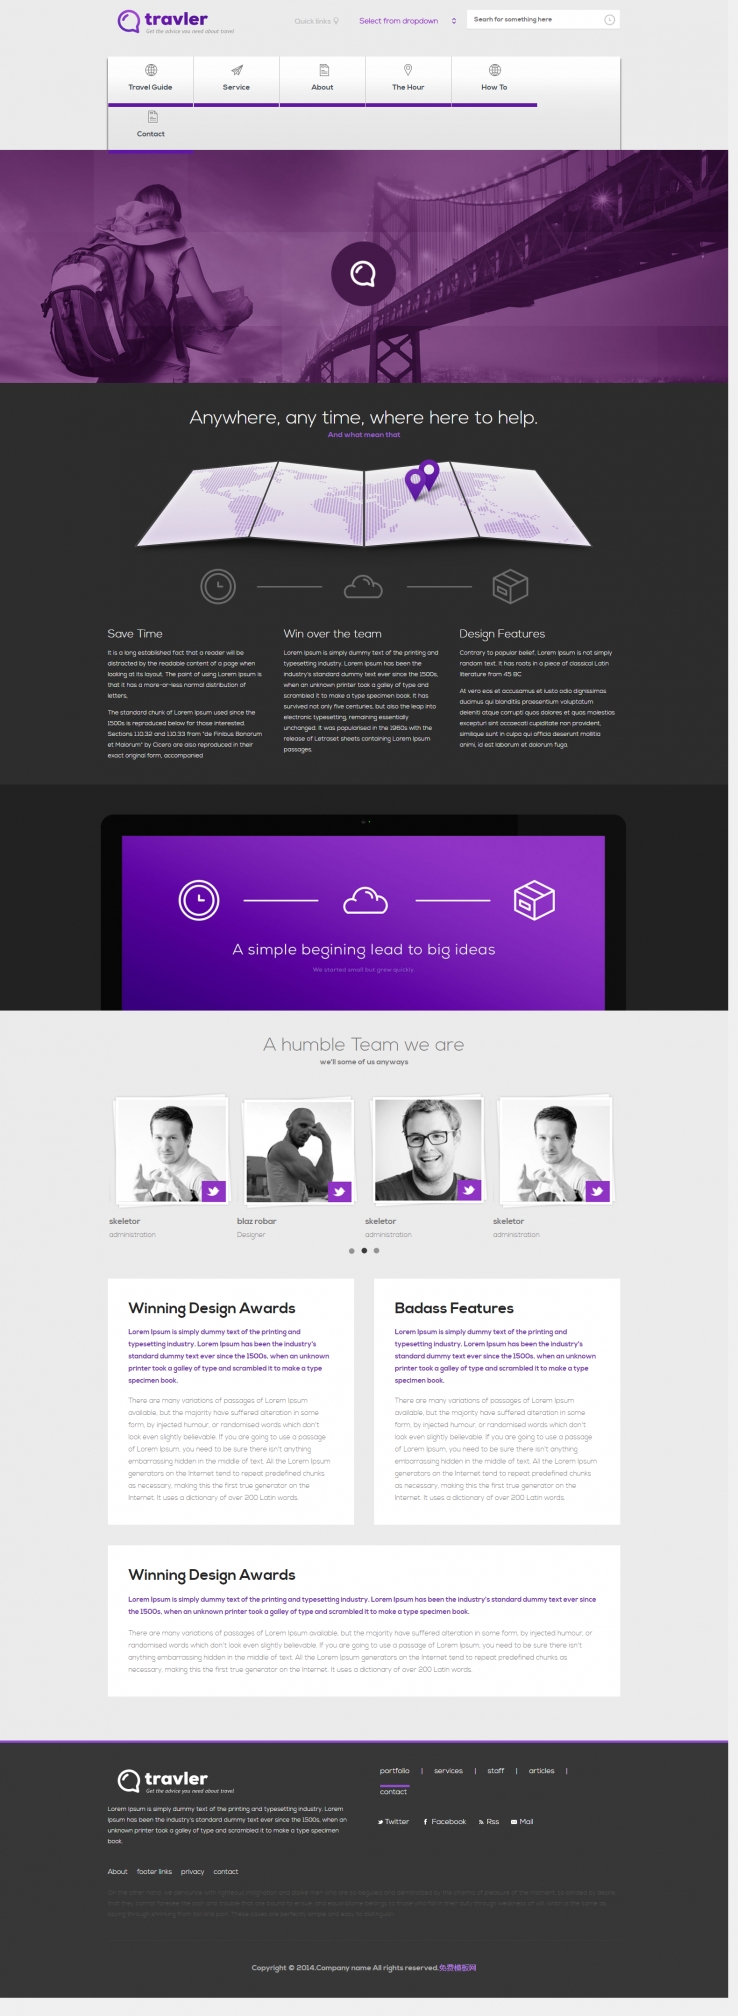 紫色简洁风格的徒步旅行企业网站模板